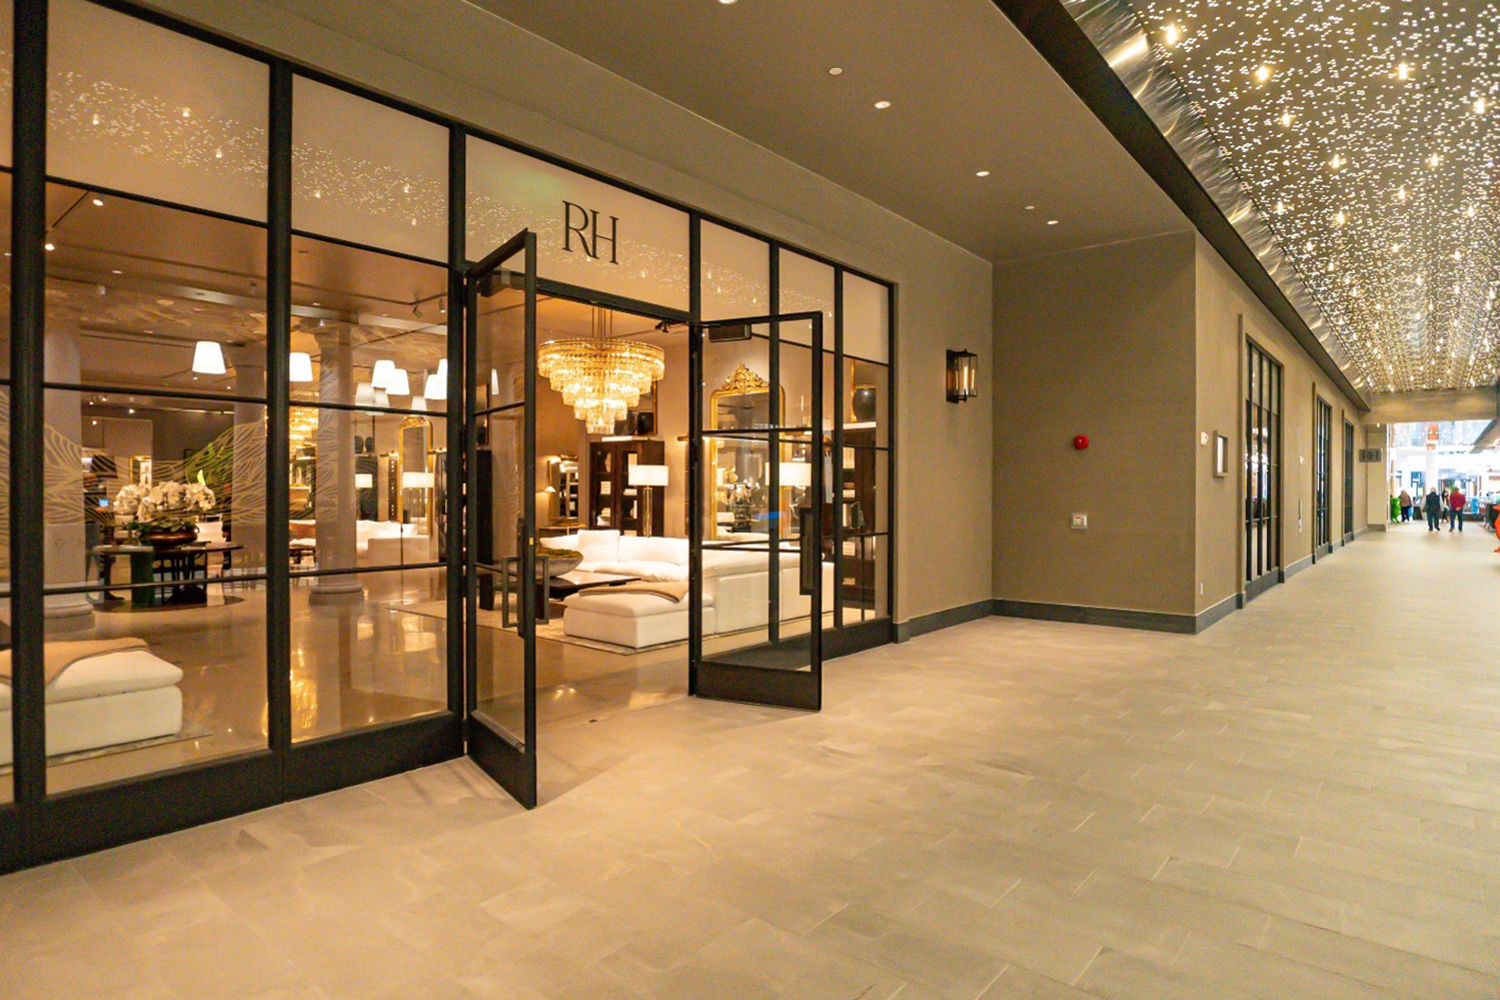 Louis Vuitton In Tysons Galleria